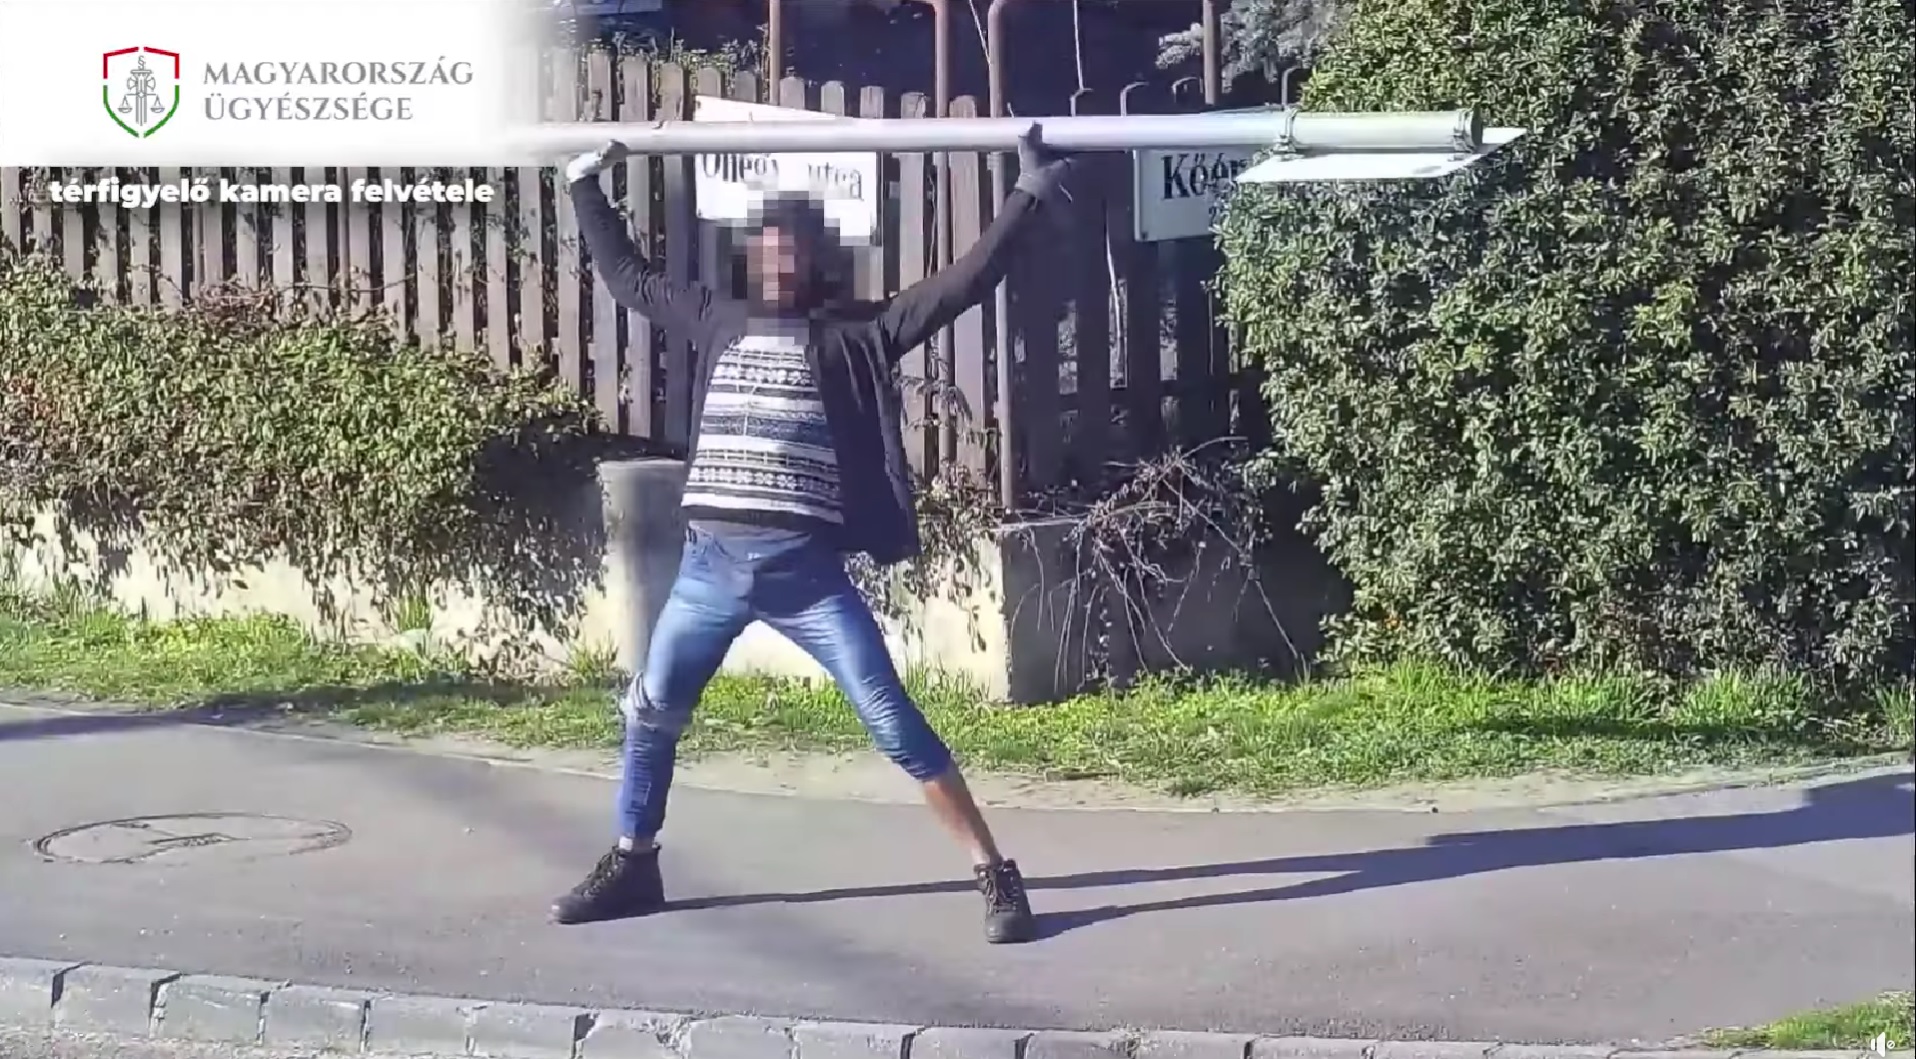 Durva videó: kitépte a közlekedési táblát a helyéről, rátámadt az autókra, majd súlyzózni kezdett egy bódult férfi